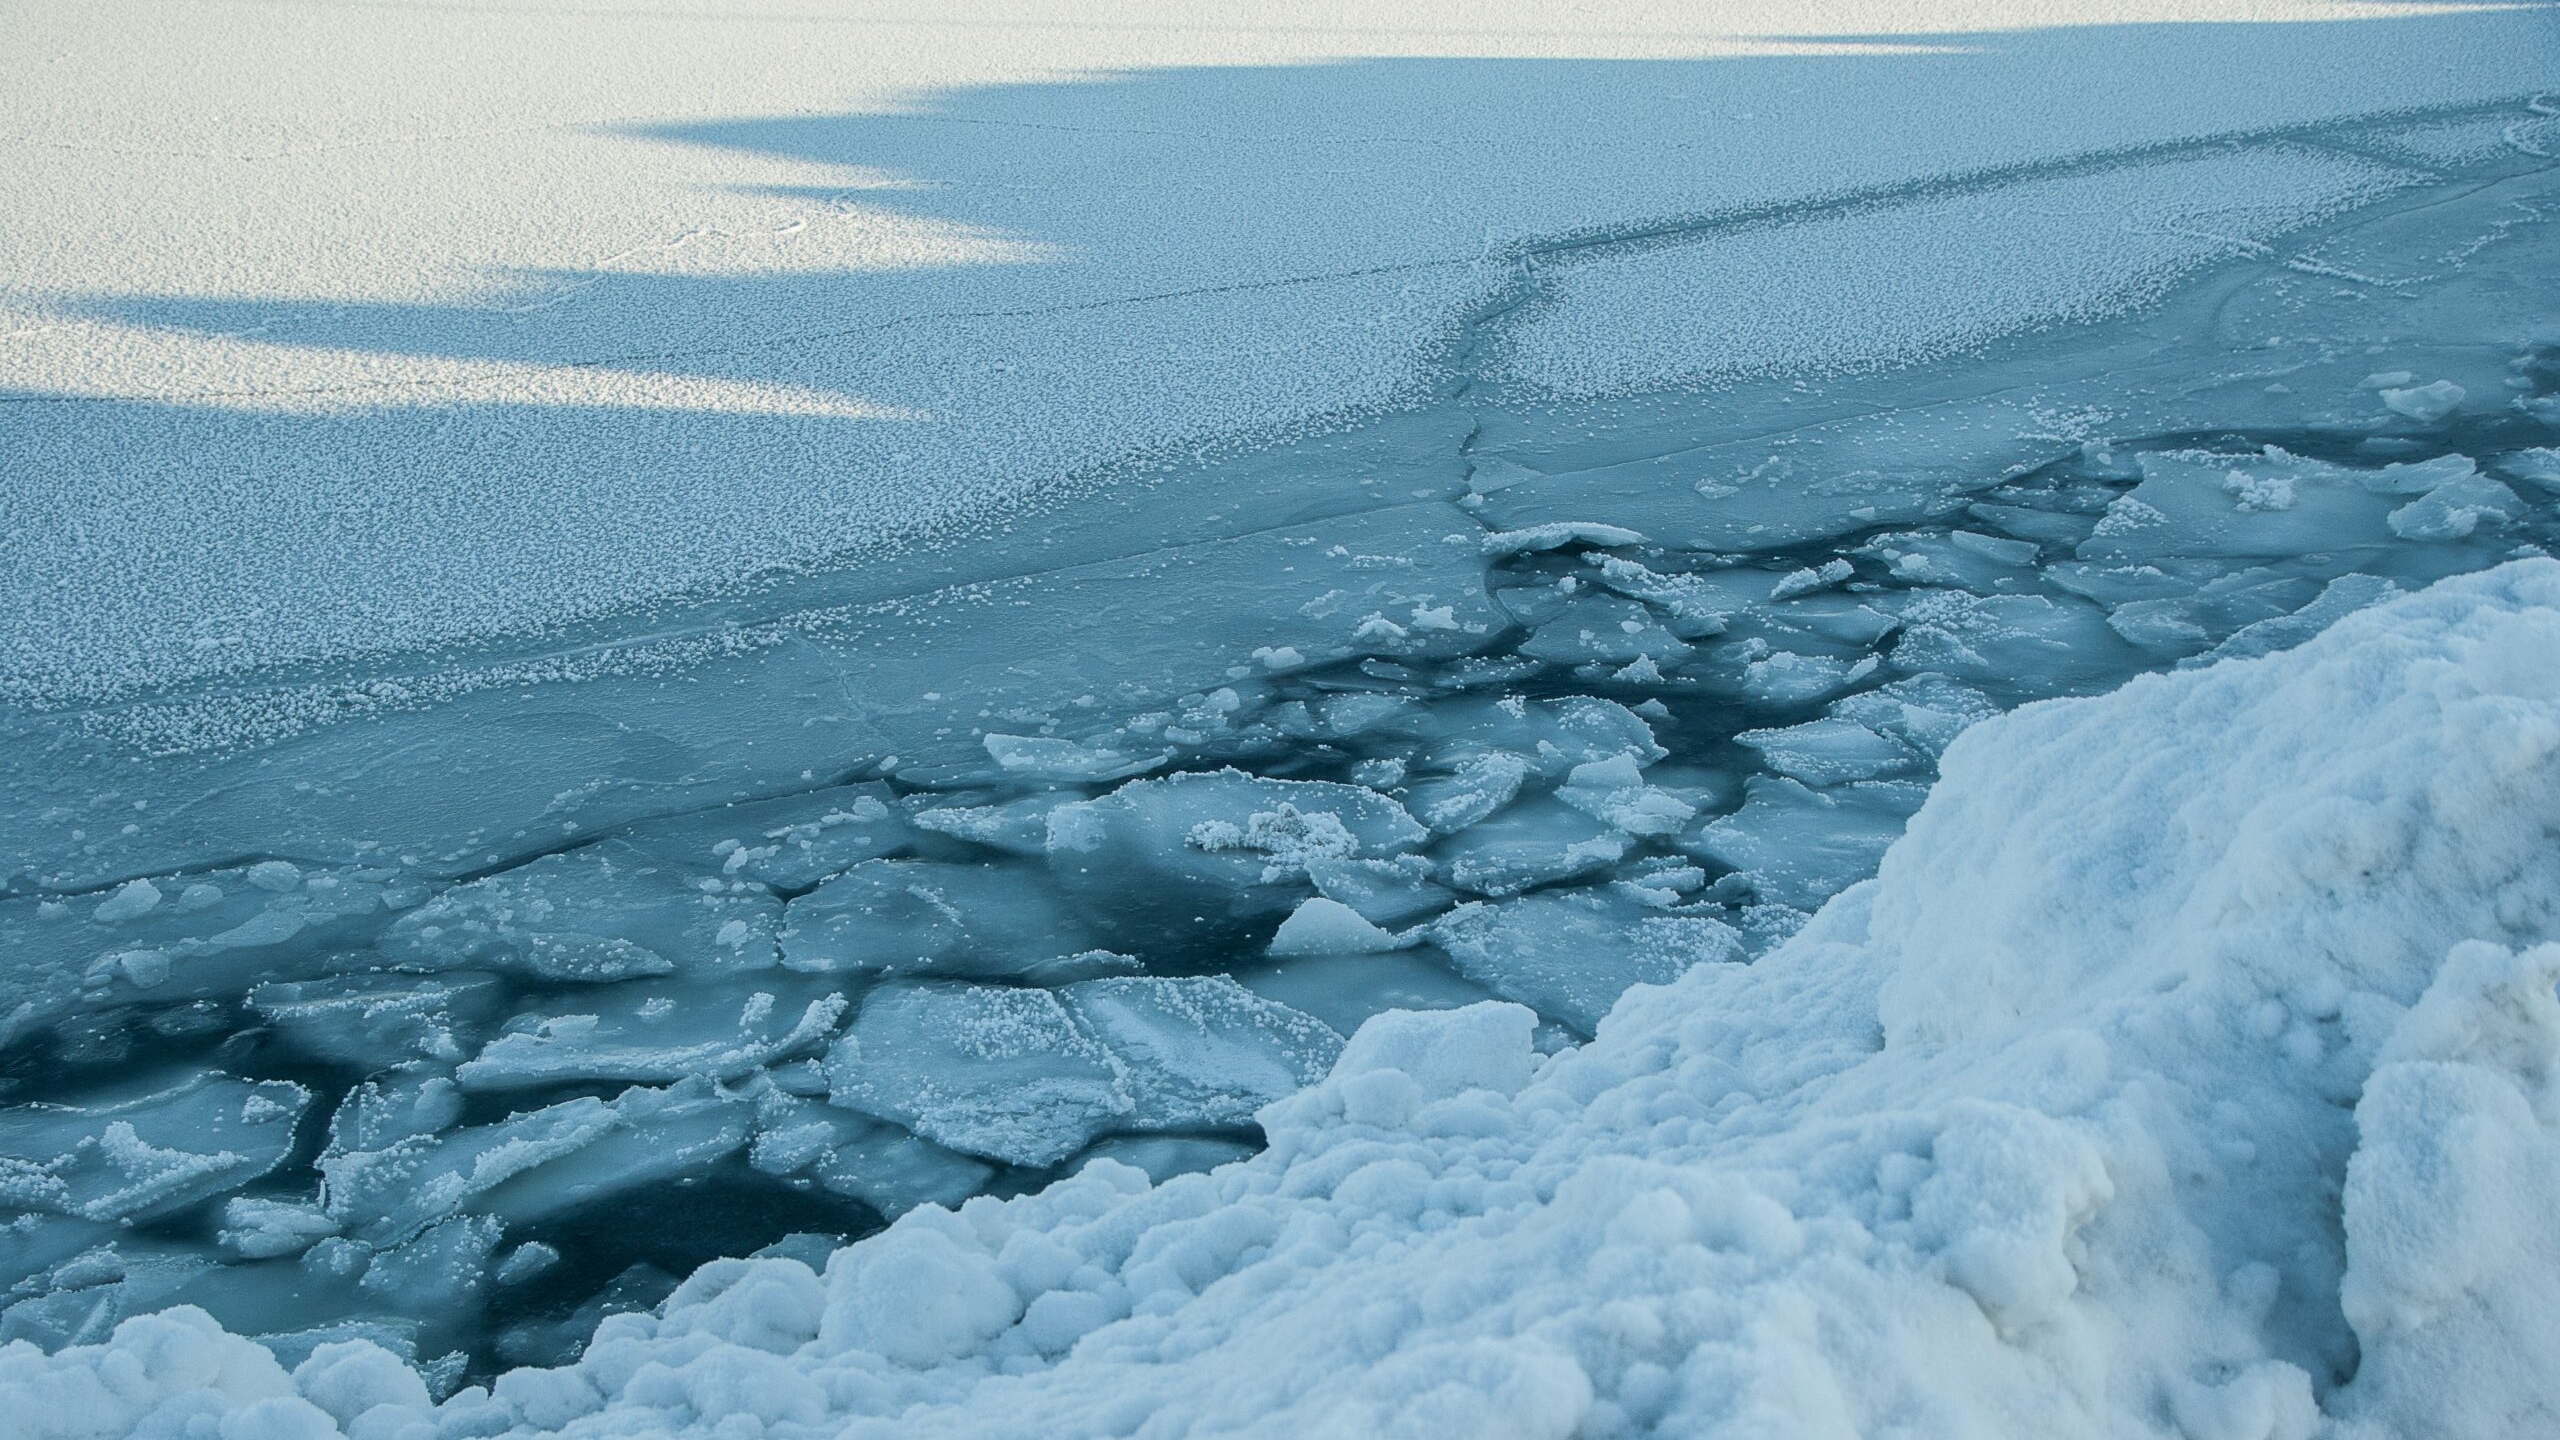 Плавучий отель «Северный полюс» позволит изучать Арктику российским ученым с комфортом